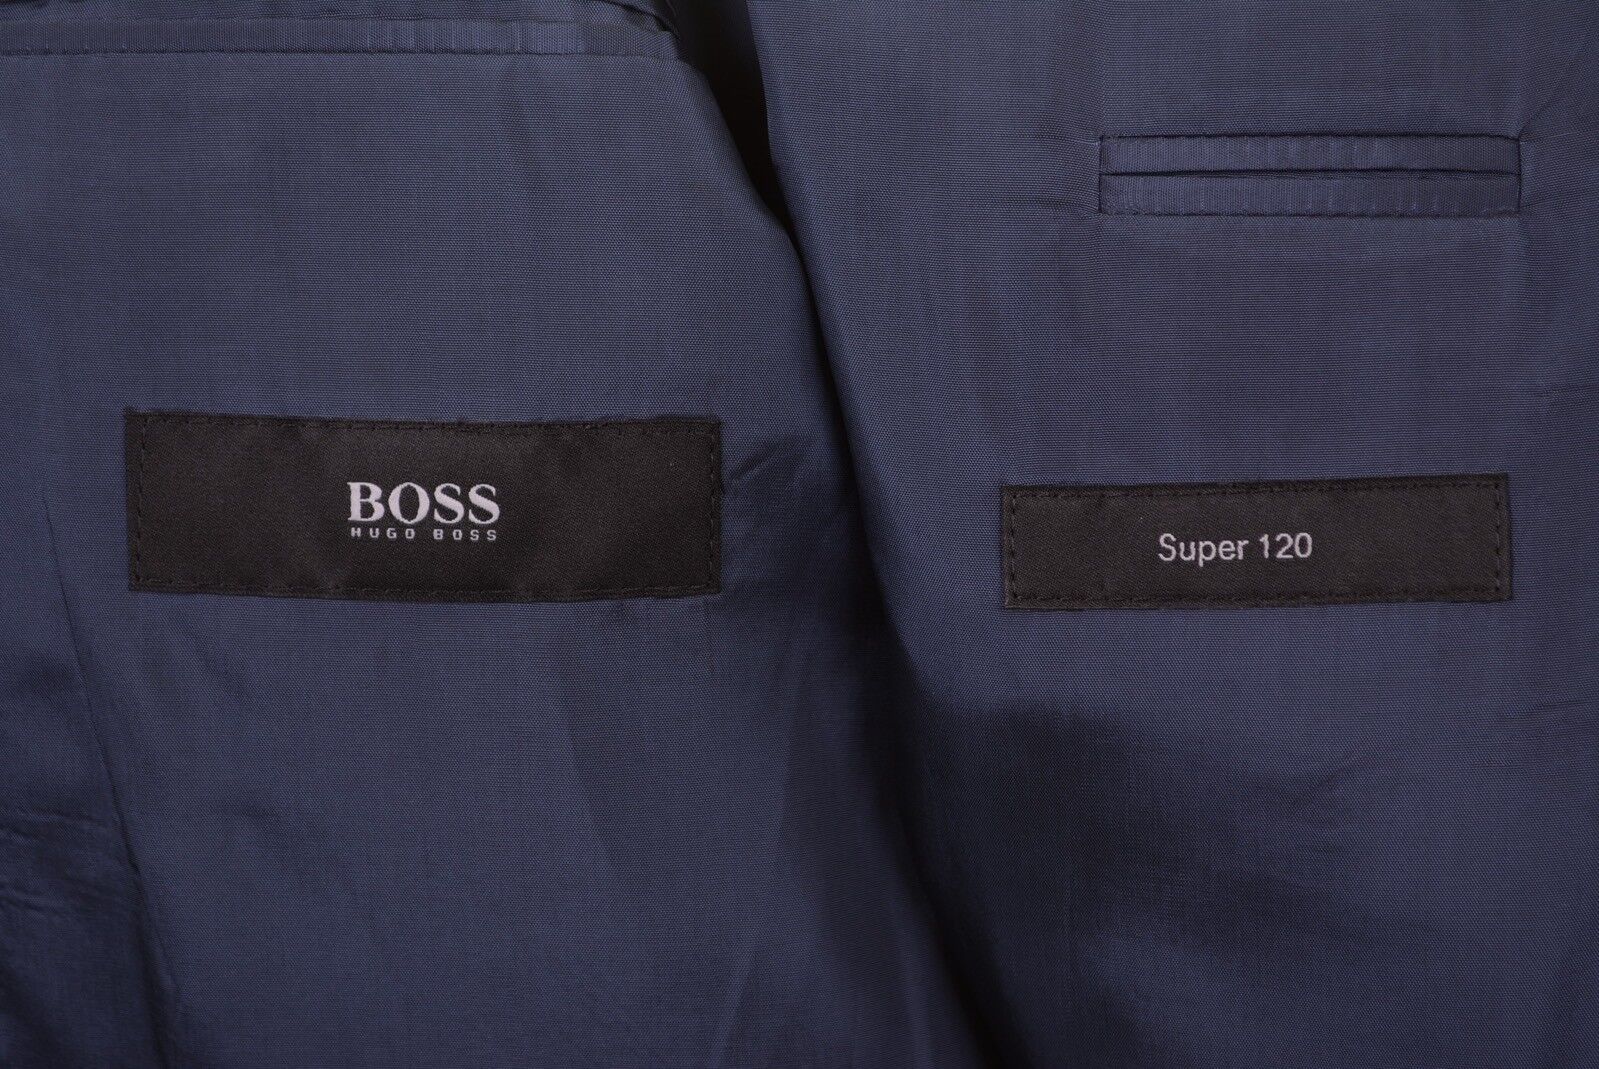 Hugo Boss Dark Navy Blue Pinstripe Super 120s Wool 2pc Suit Jacket Pants 40 R Krajowe tanie